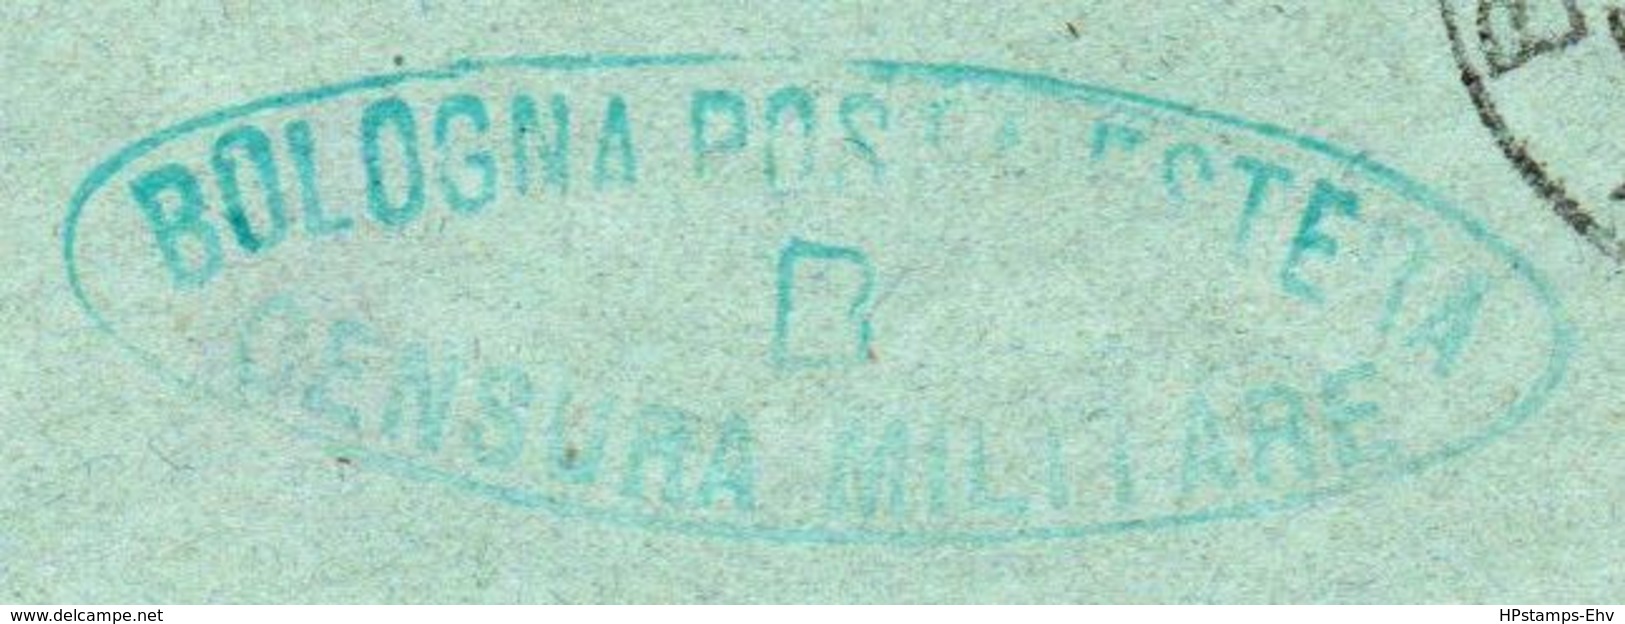 Italy 1918 Green Oval Bologna Posta Estera Censura Militare B Mark, Letter To Amsterdam, Bologna 1923 Mark? 2003.0710 - WW1